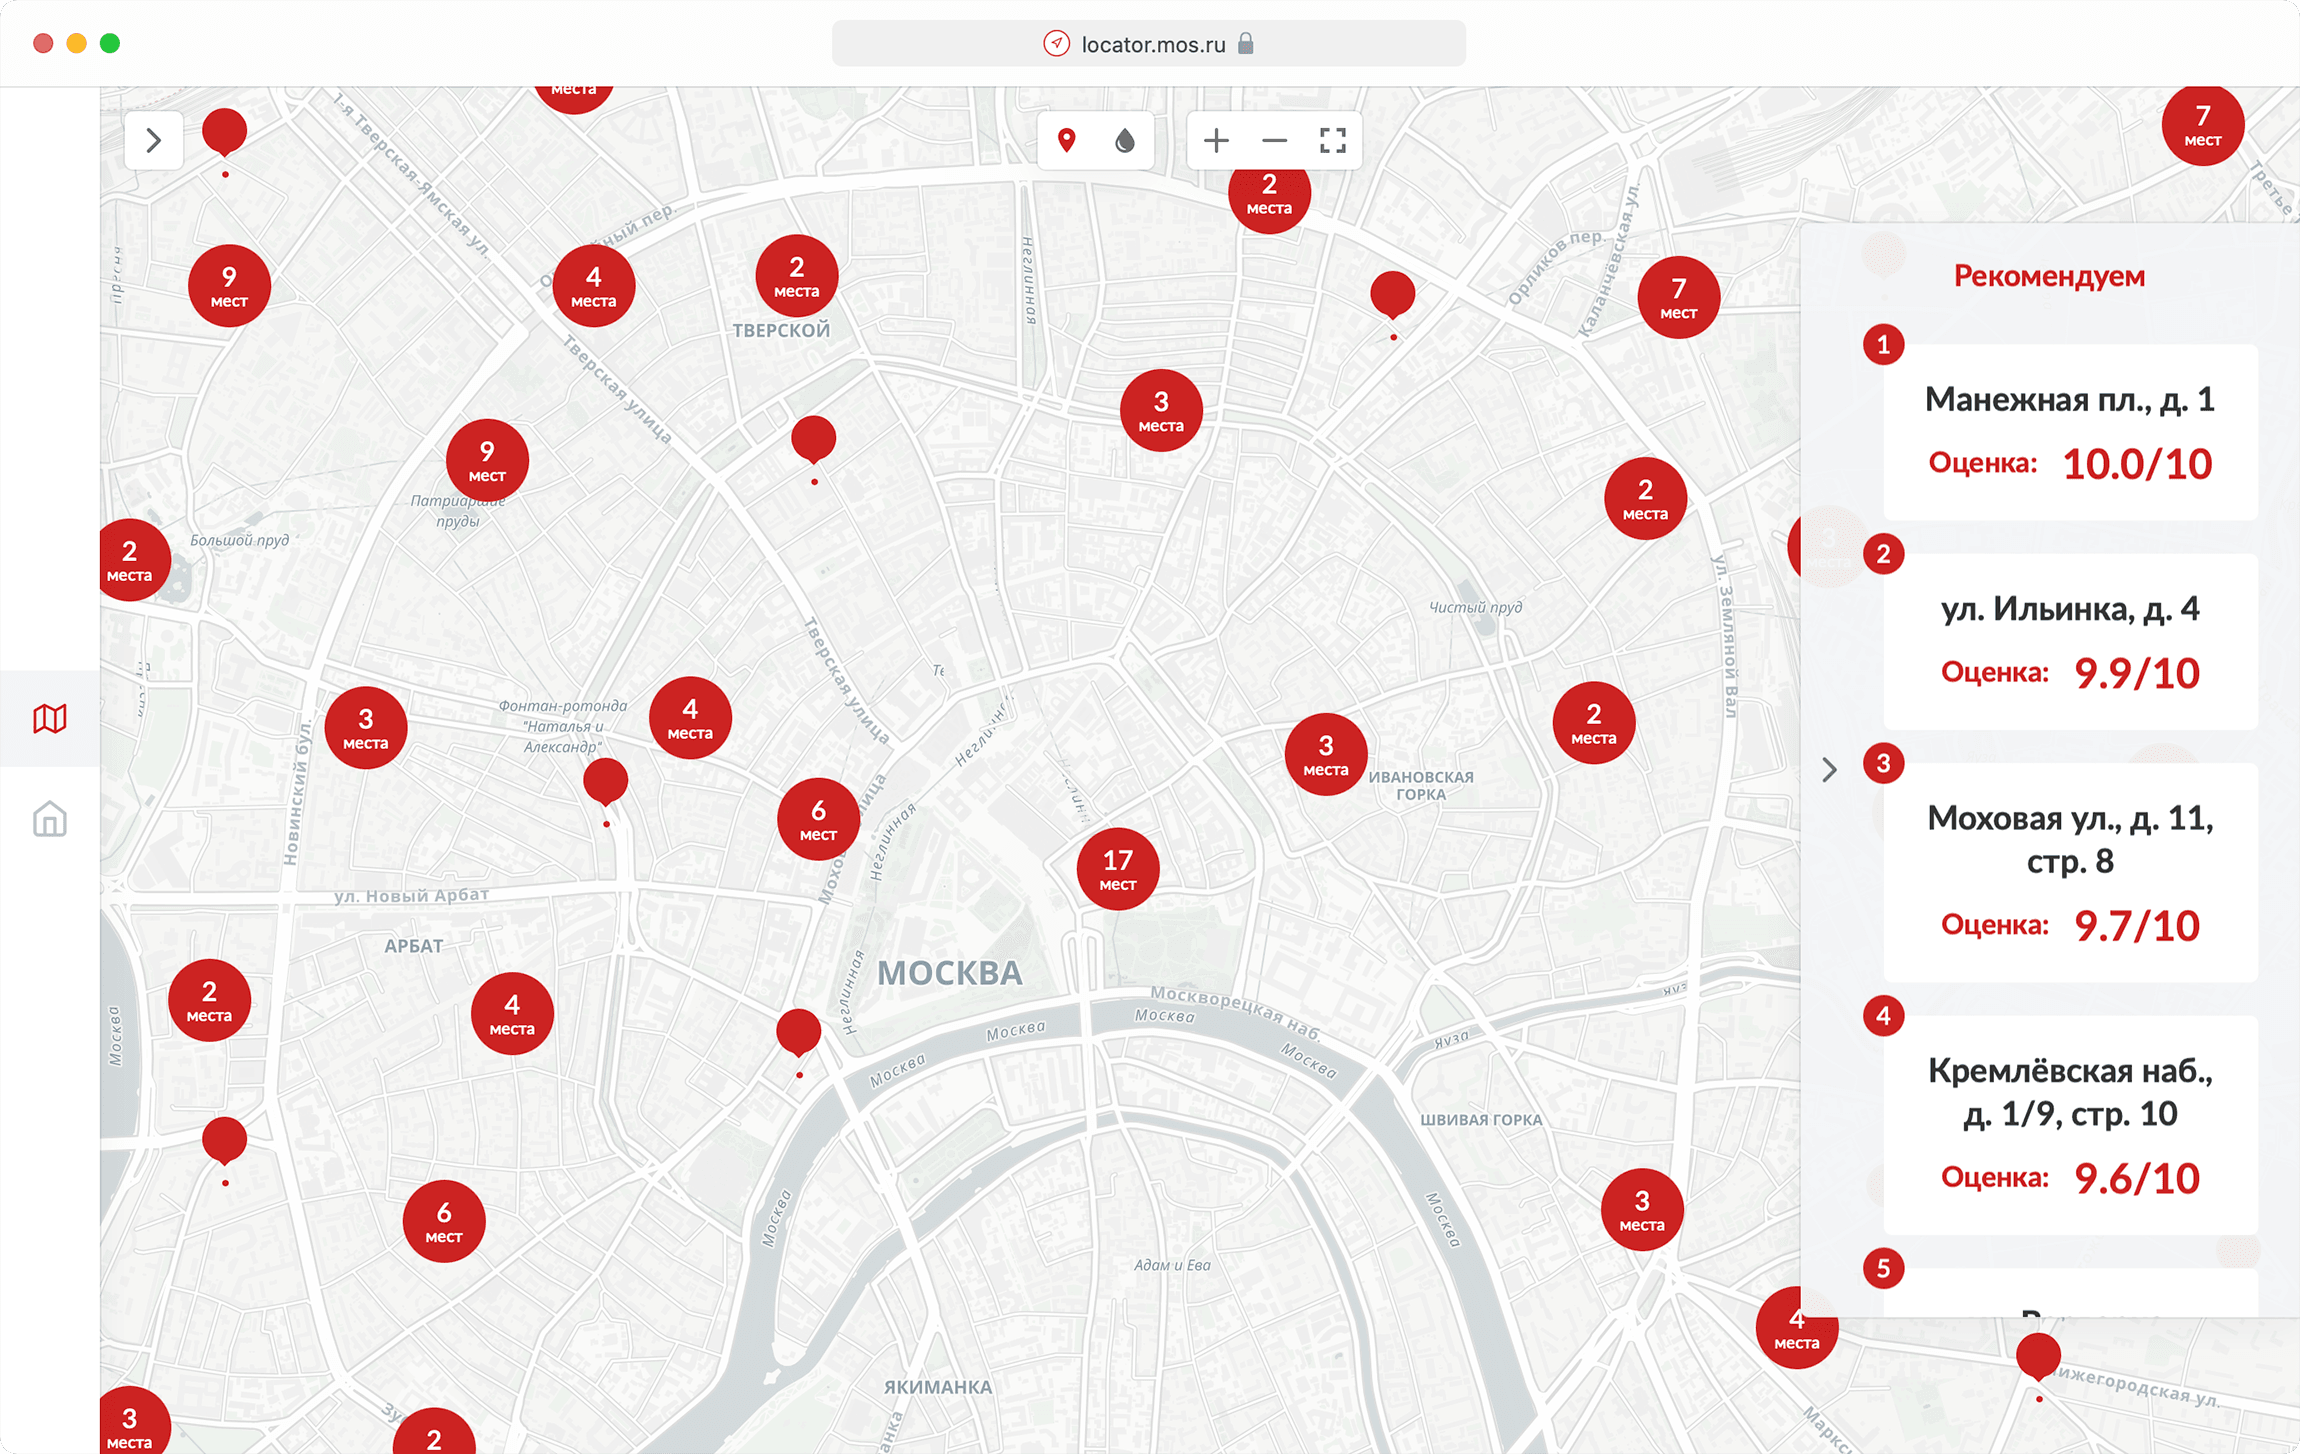 Страница "Локатора" с множеством маркеров на карте